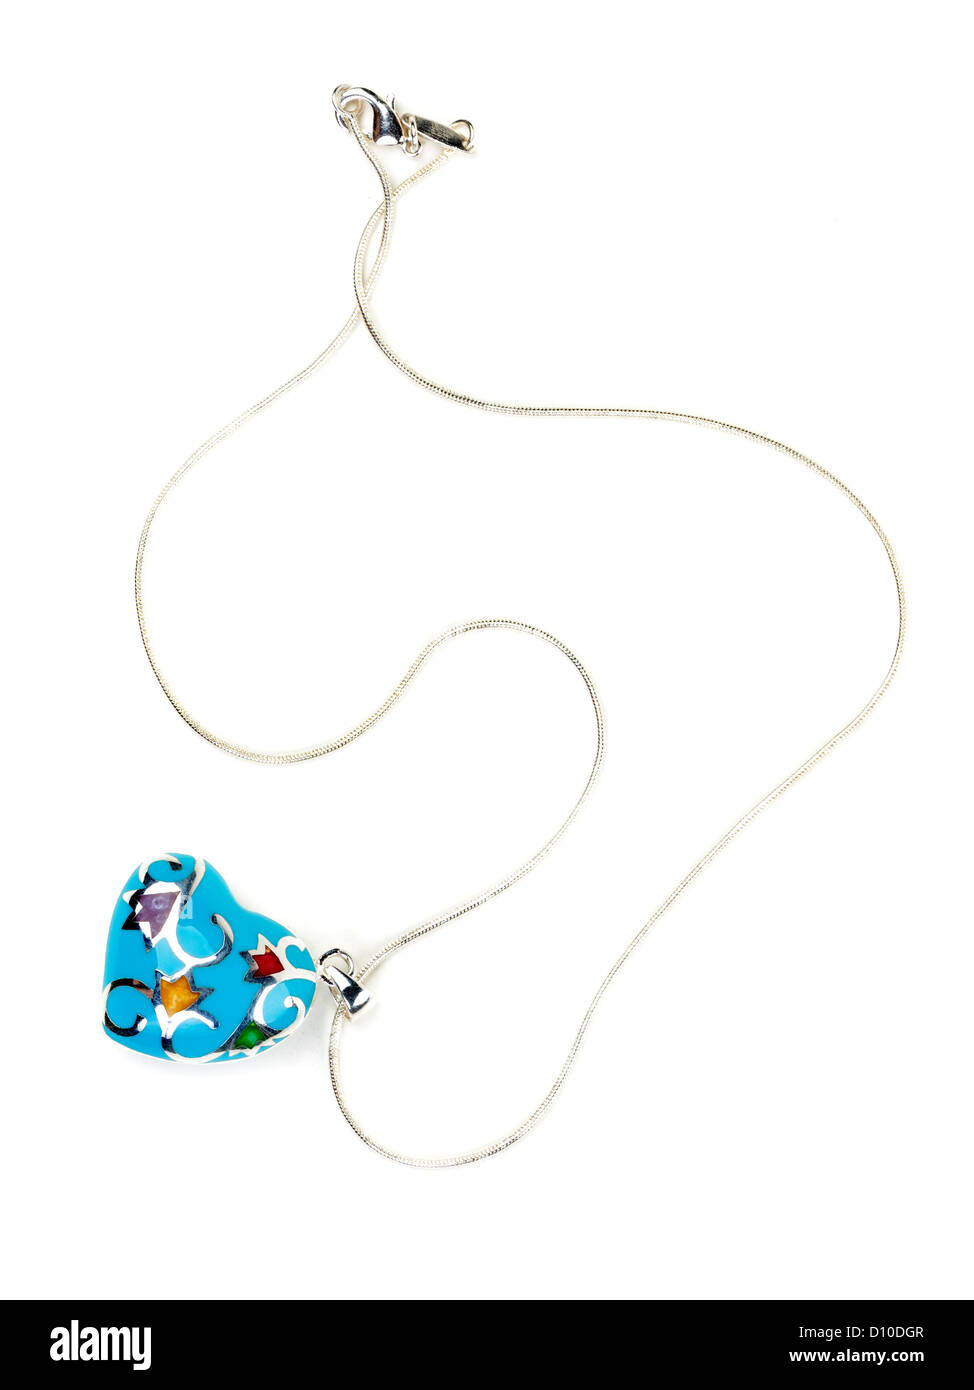 Blue heart-shaped pendant isolated on white background Stock Photo